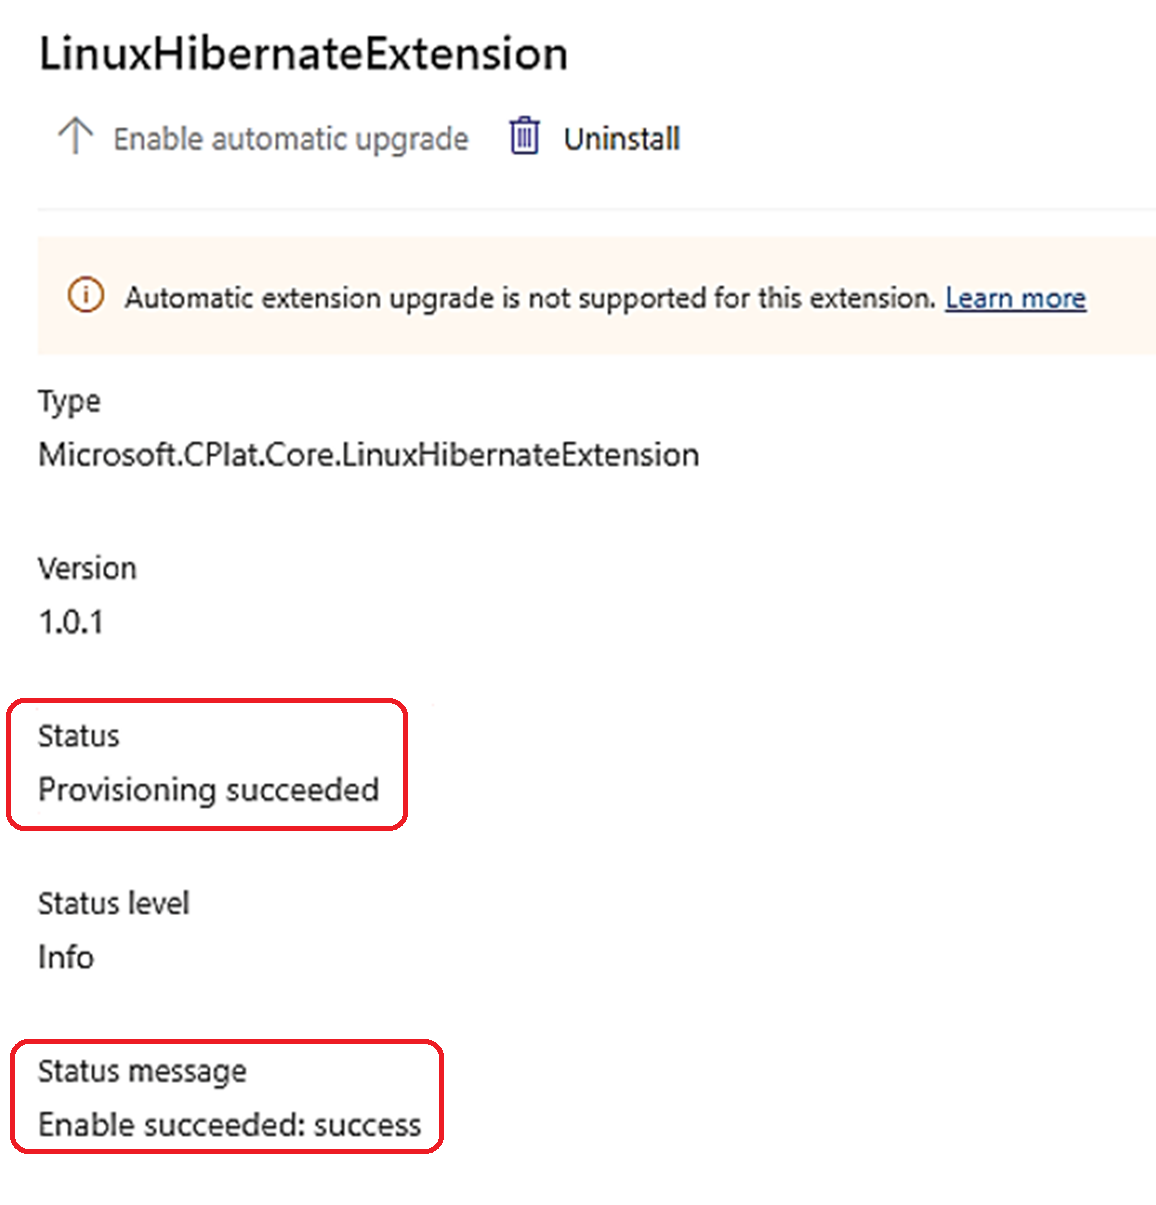 Schermopname van de status- en statusberichtrapportage dat het inrichten is geslaagd voor een Virtuele Linux-machine.